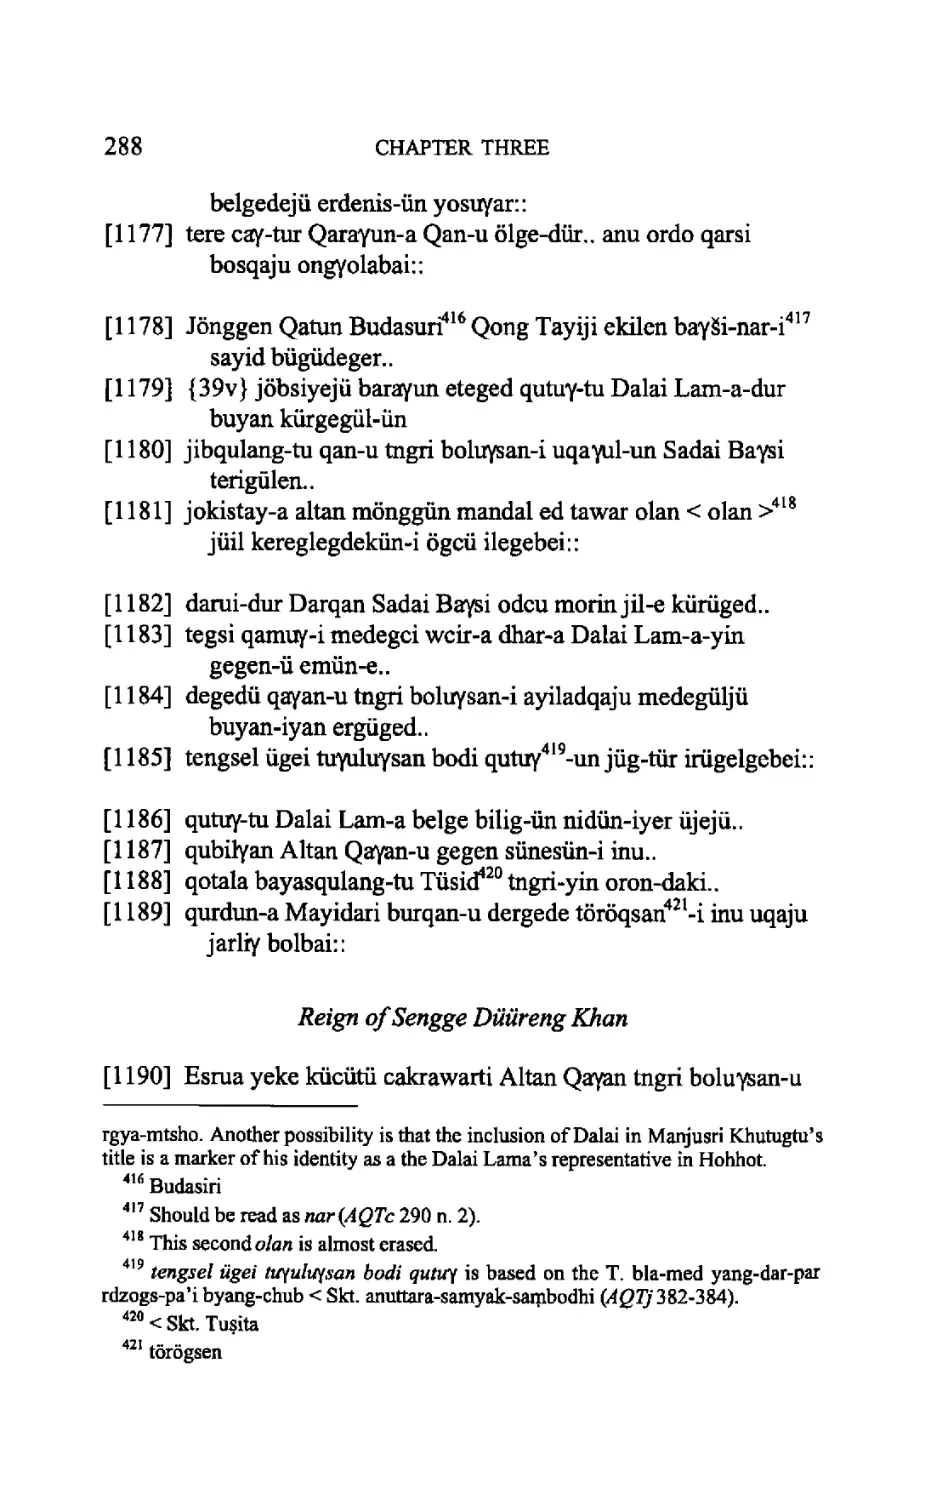 Reign of Sengge Düüreng Khan